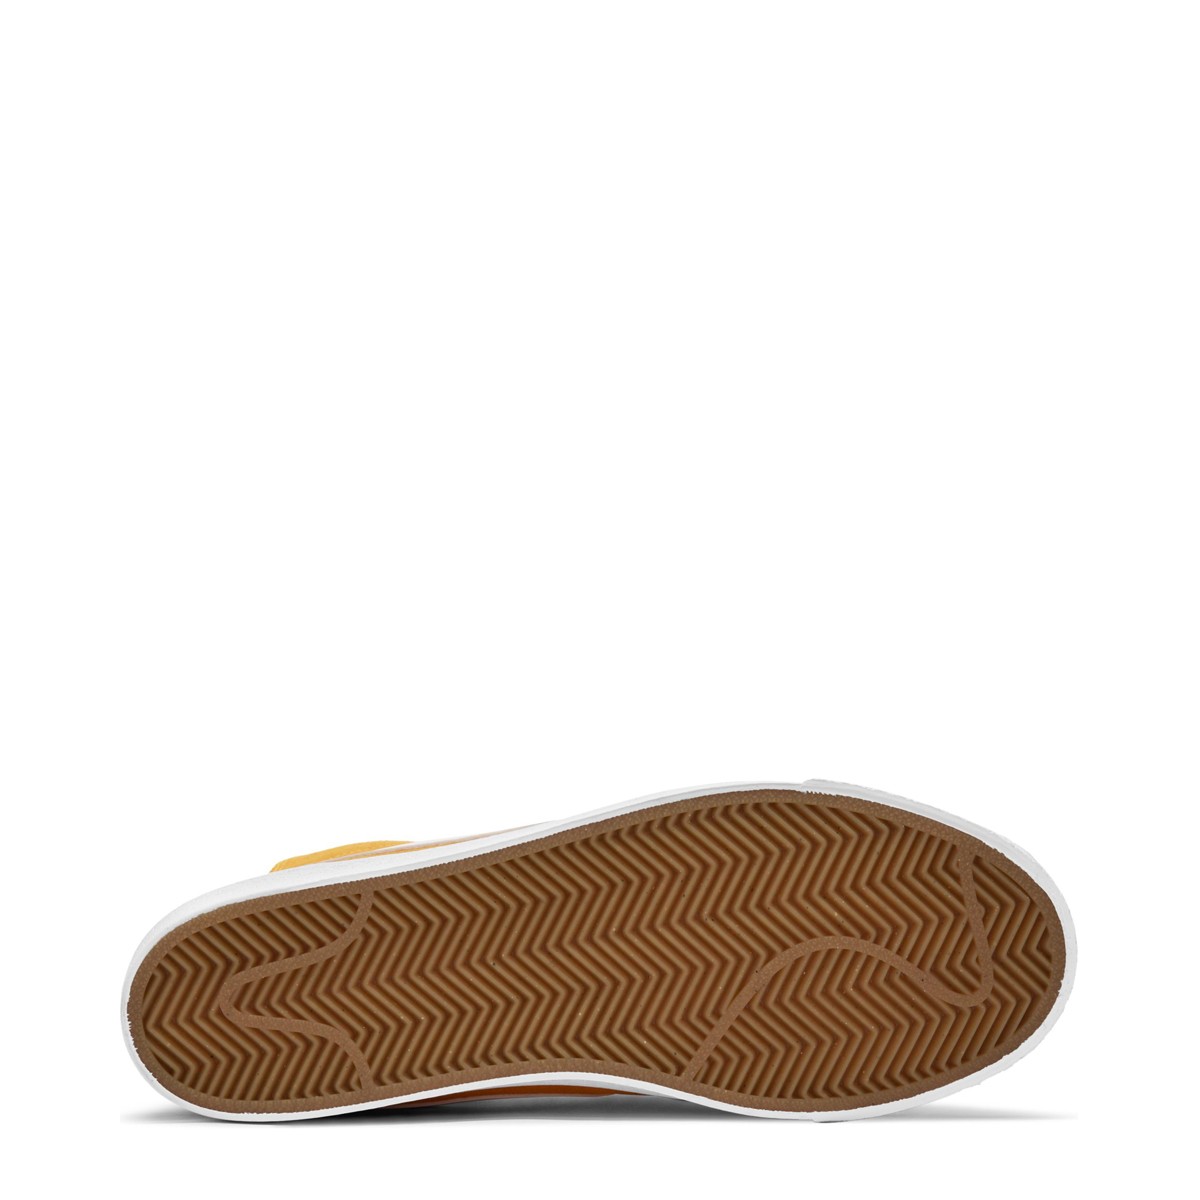 Nike SB Zoom Blazer Mid Kadın Ayakkabısı 864349-700